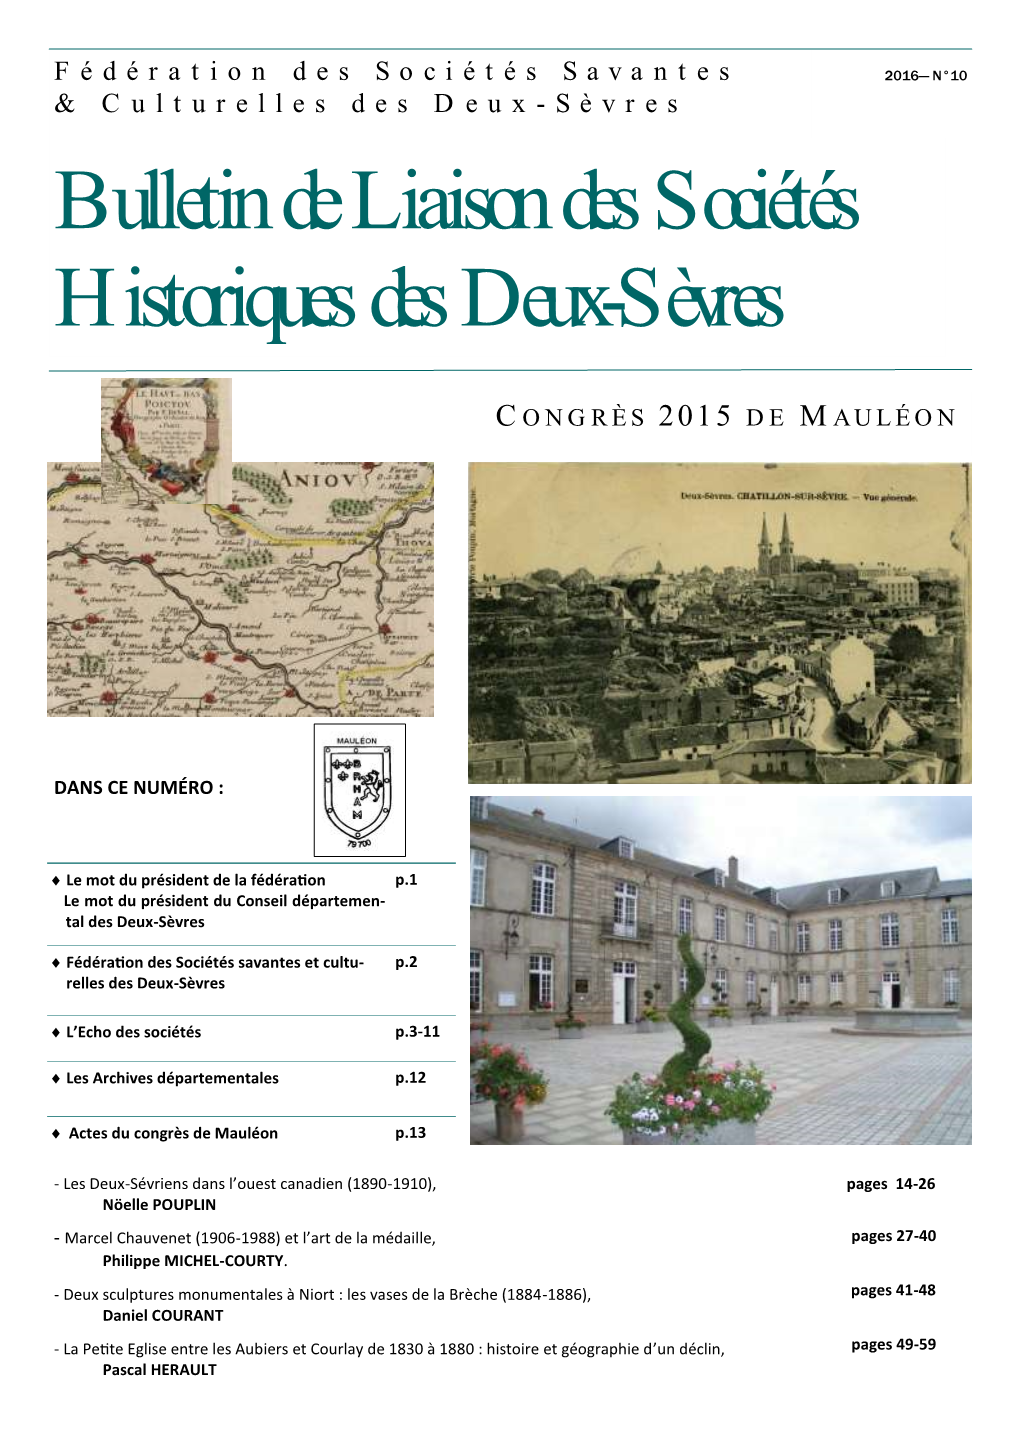 Bulletin De Liaison Des Sociétés Historiques Des Deux-Sèvres